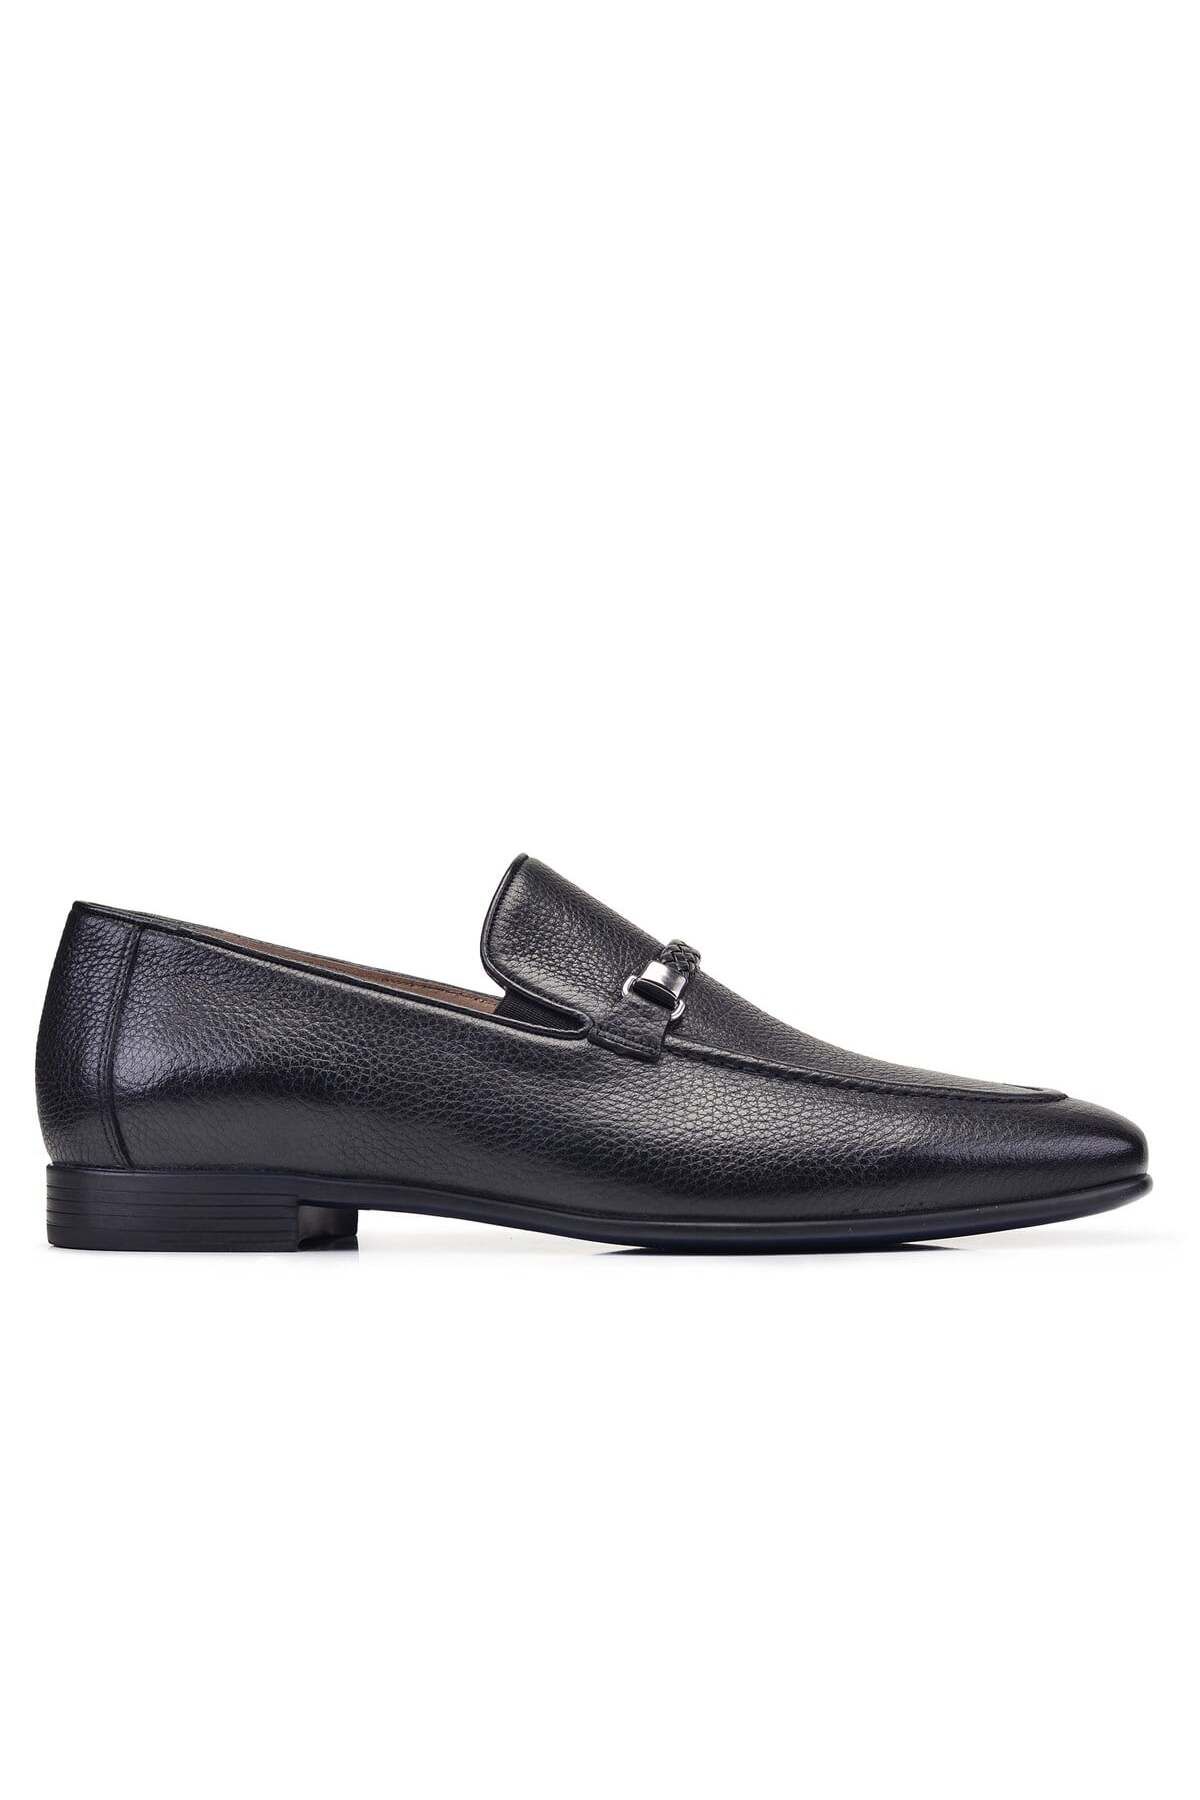 Nevzat Onay Siyah Günlük Loafer Erkek Ayakkabı -12658-